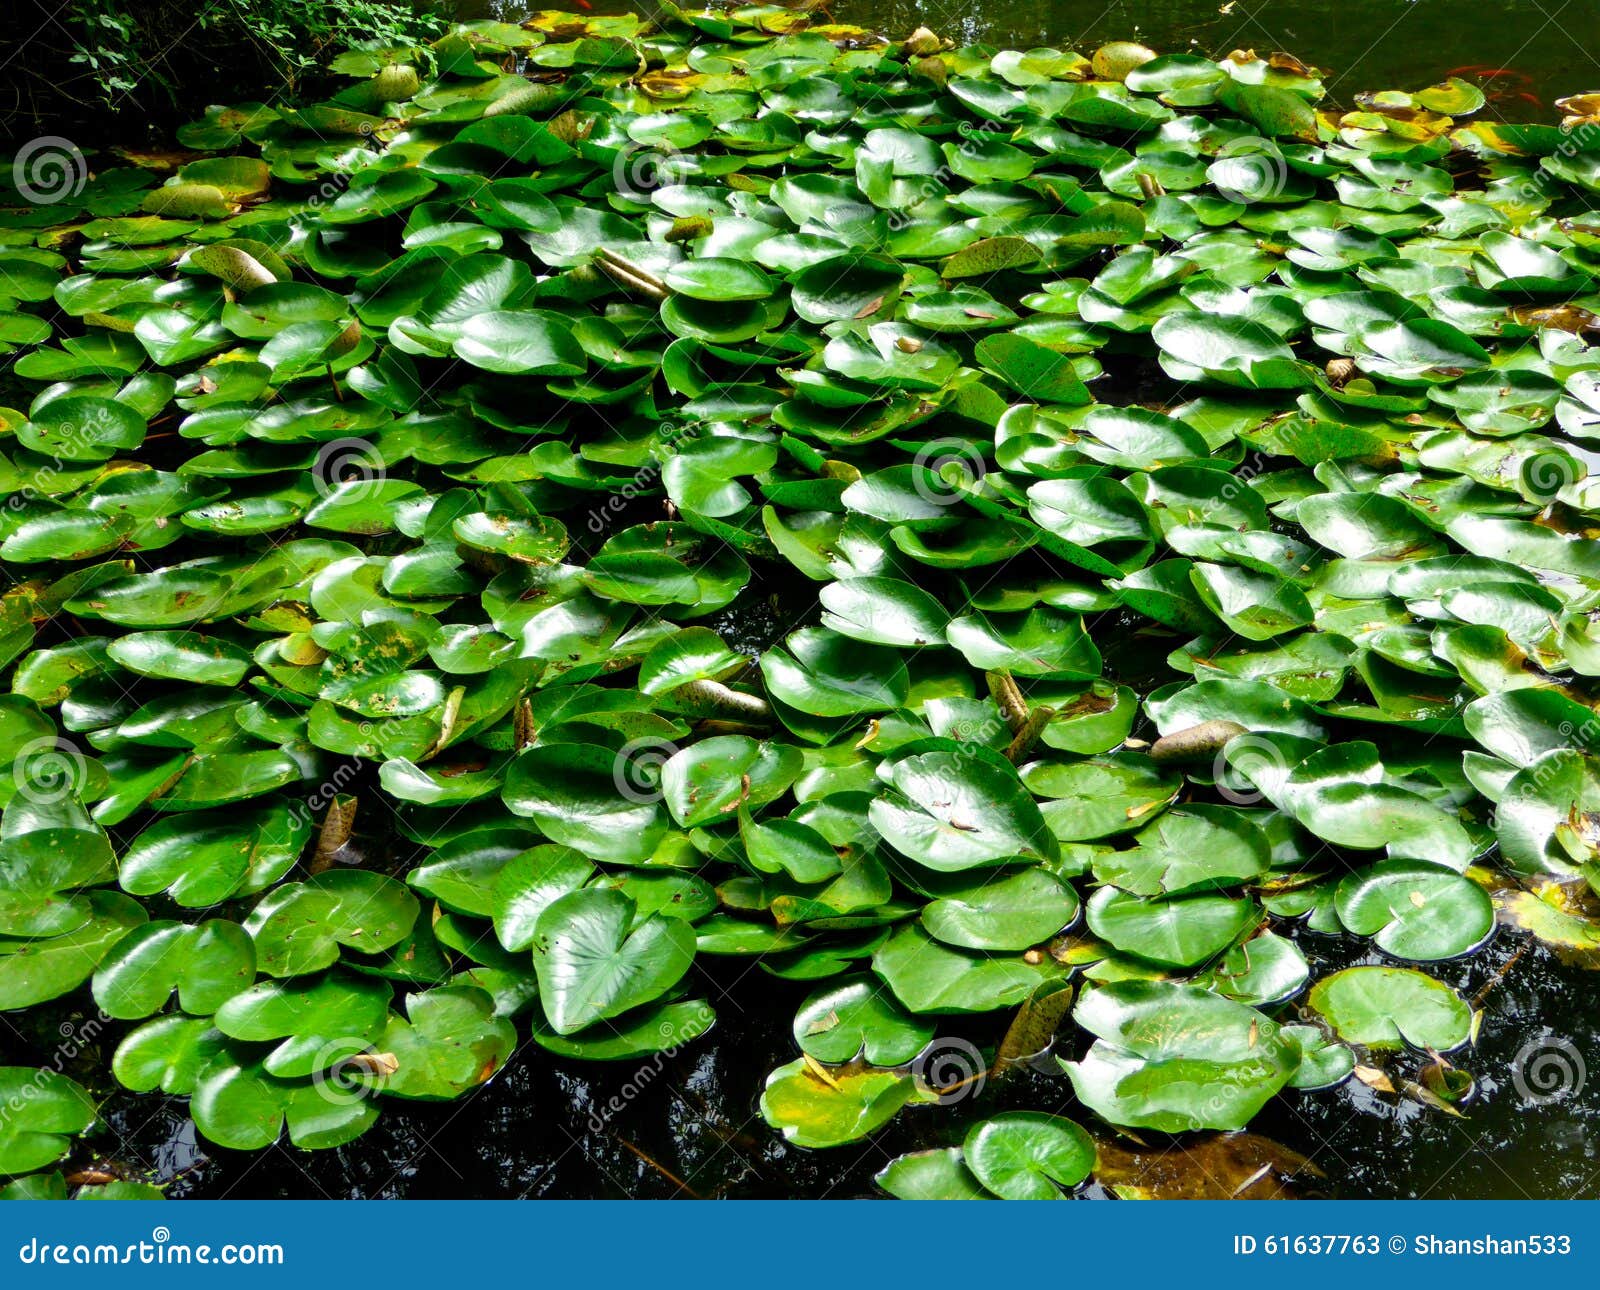 Lotus Leaf Growing on the Water Stock Image - Image of nature, jiangsu ...